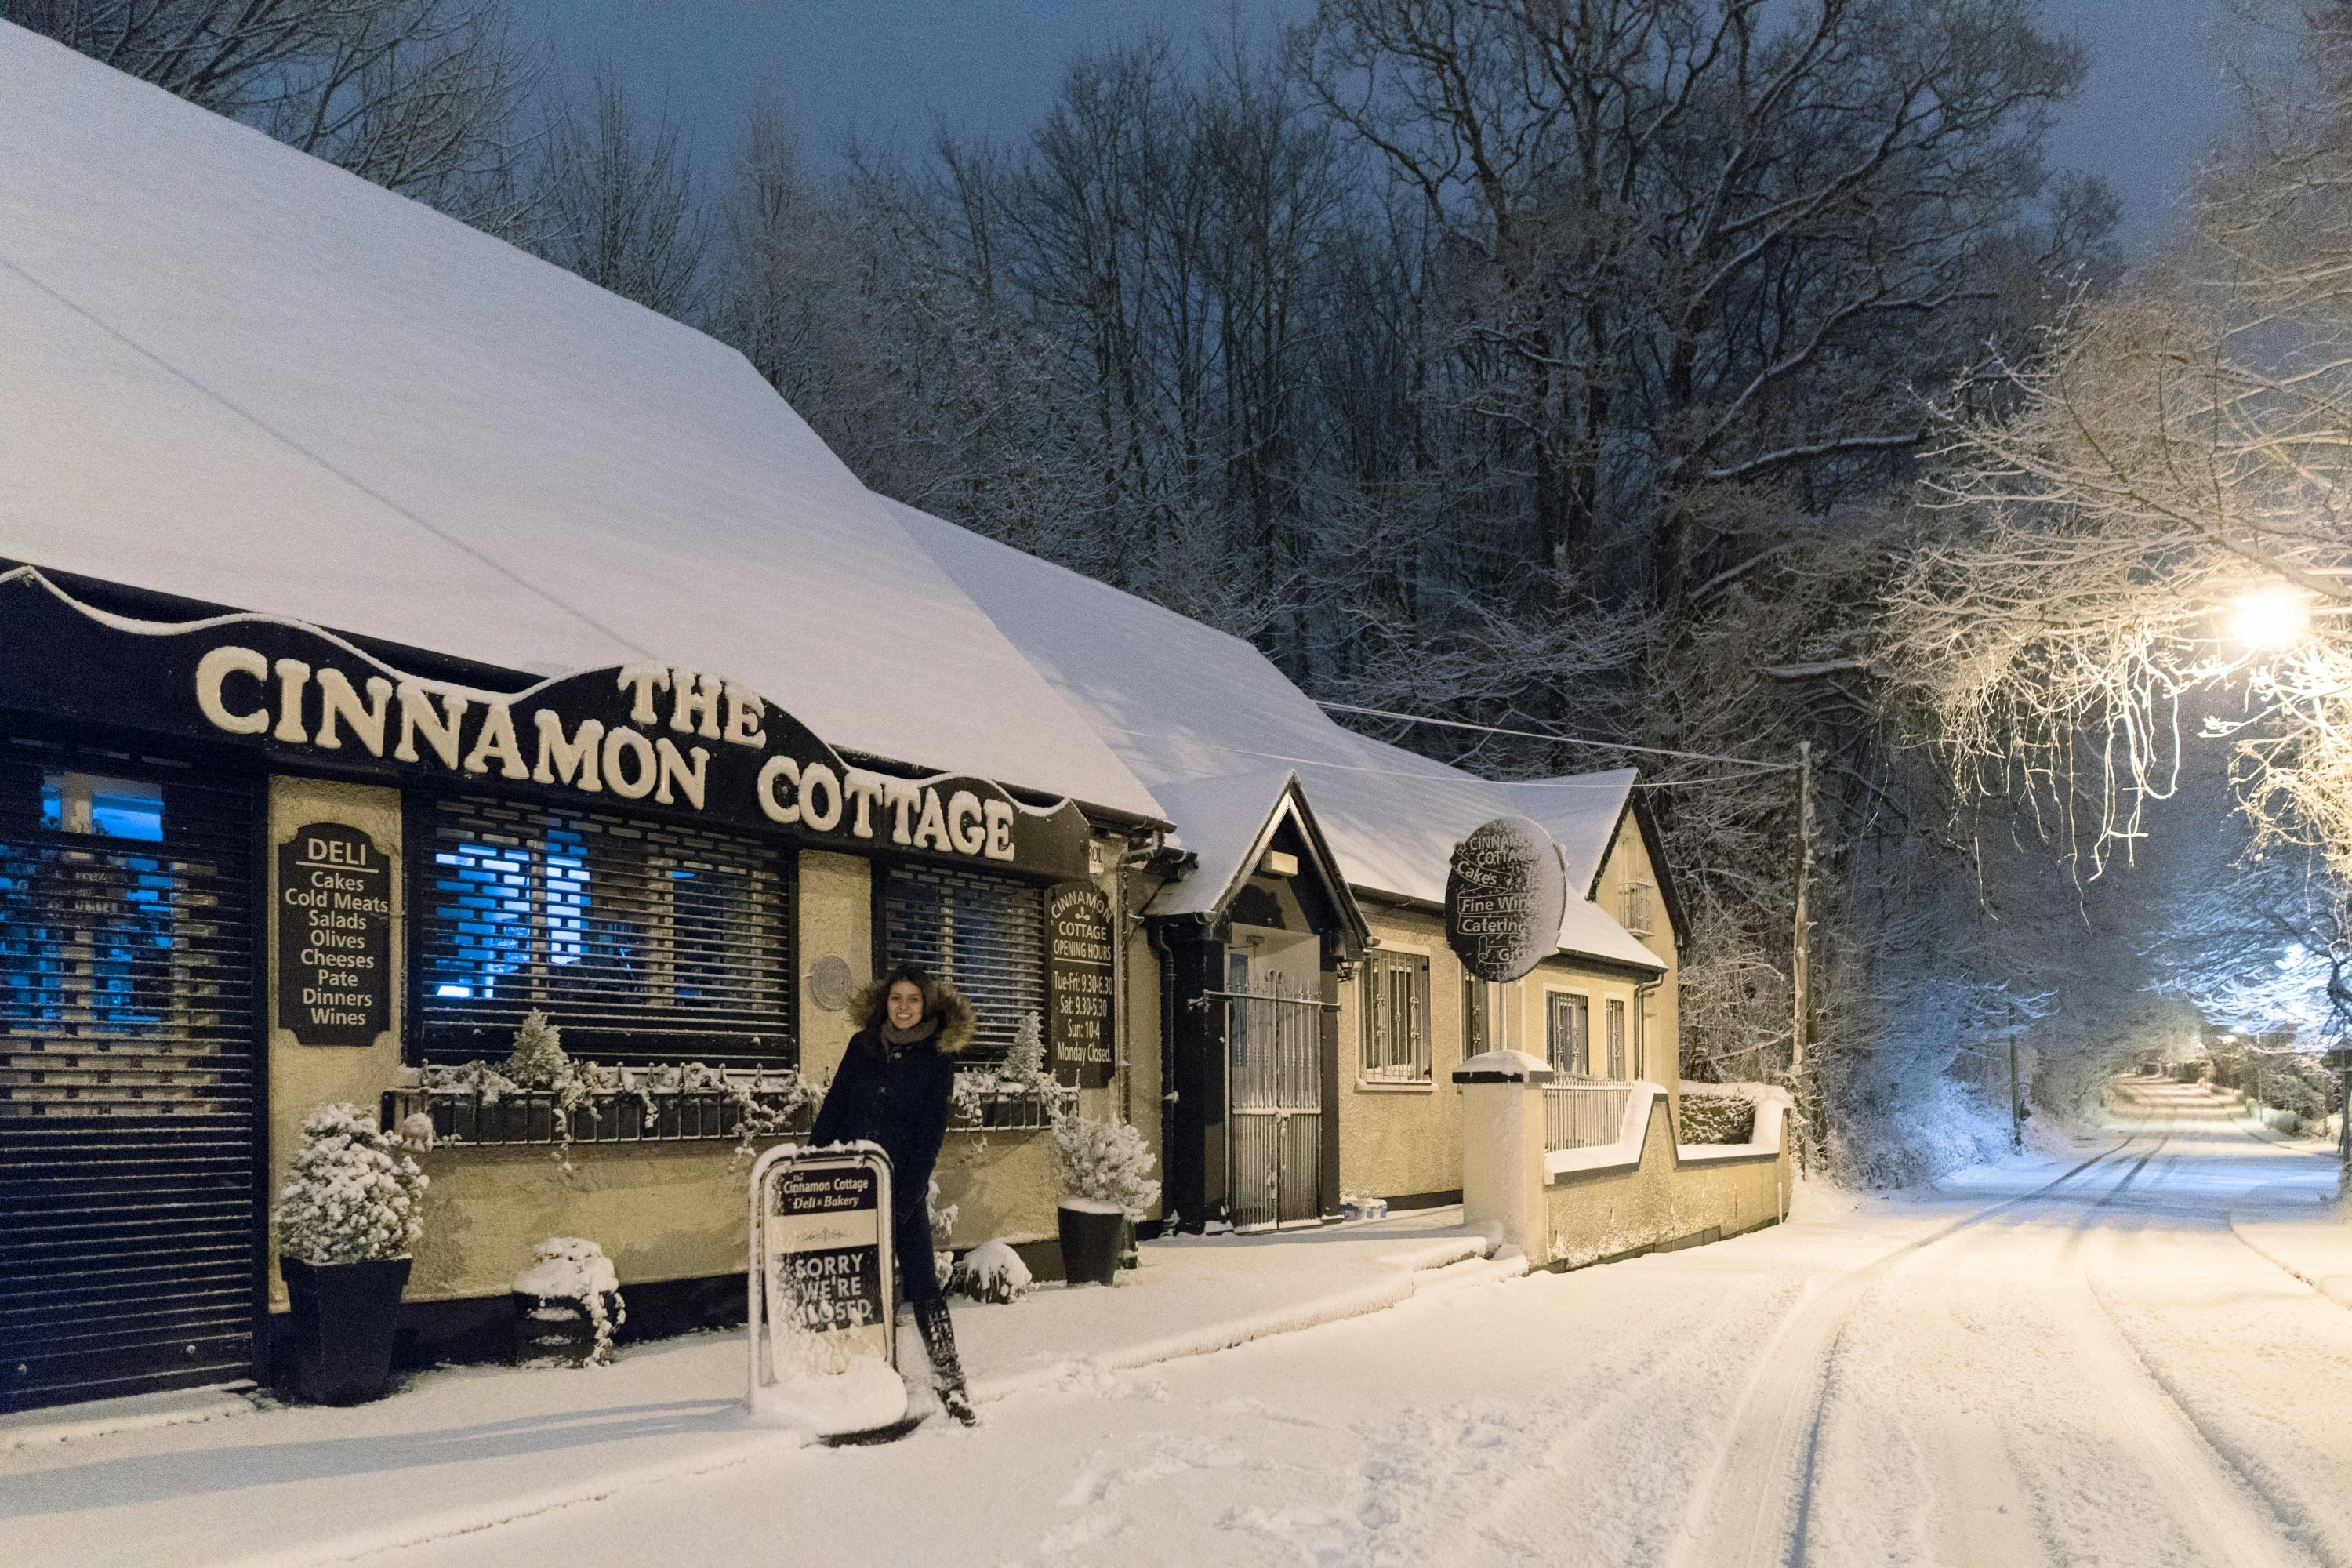 The Cinnamon Cottage